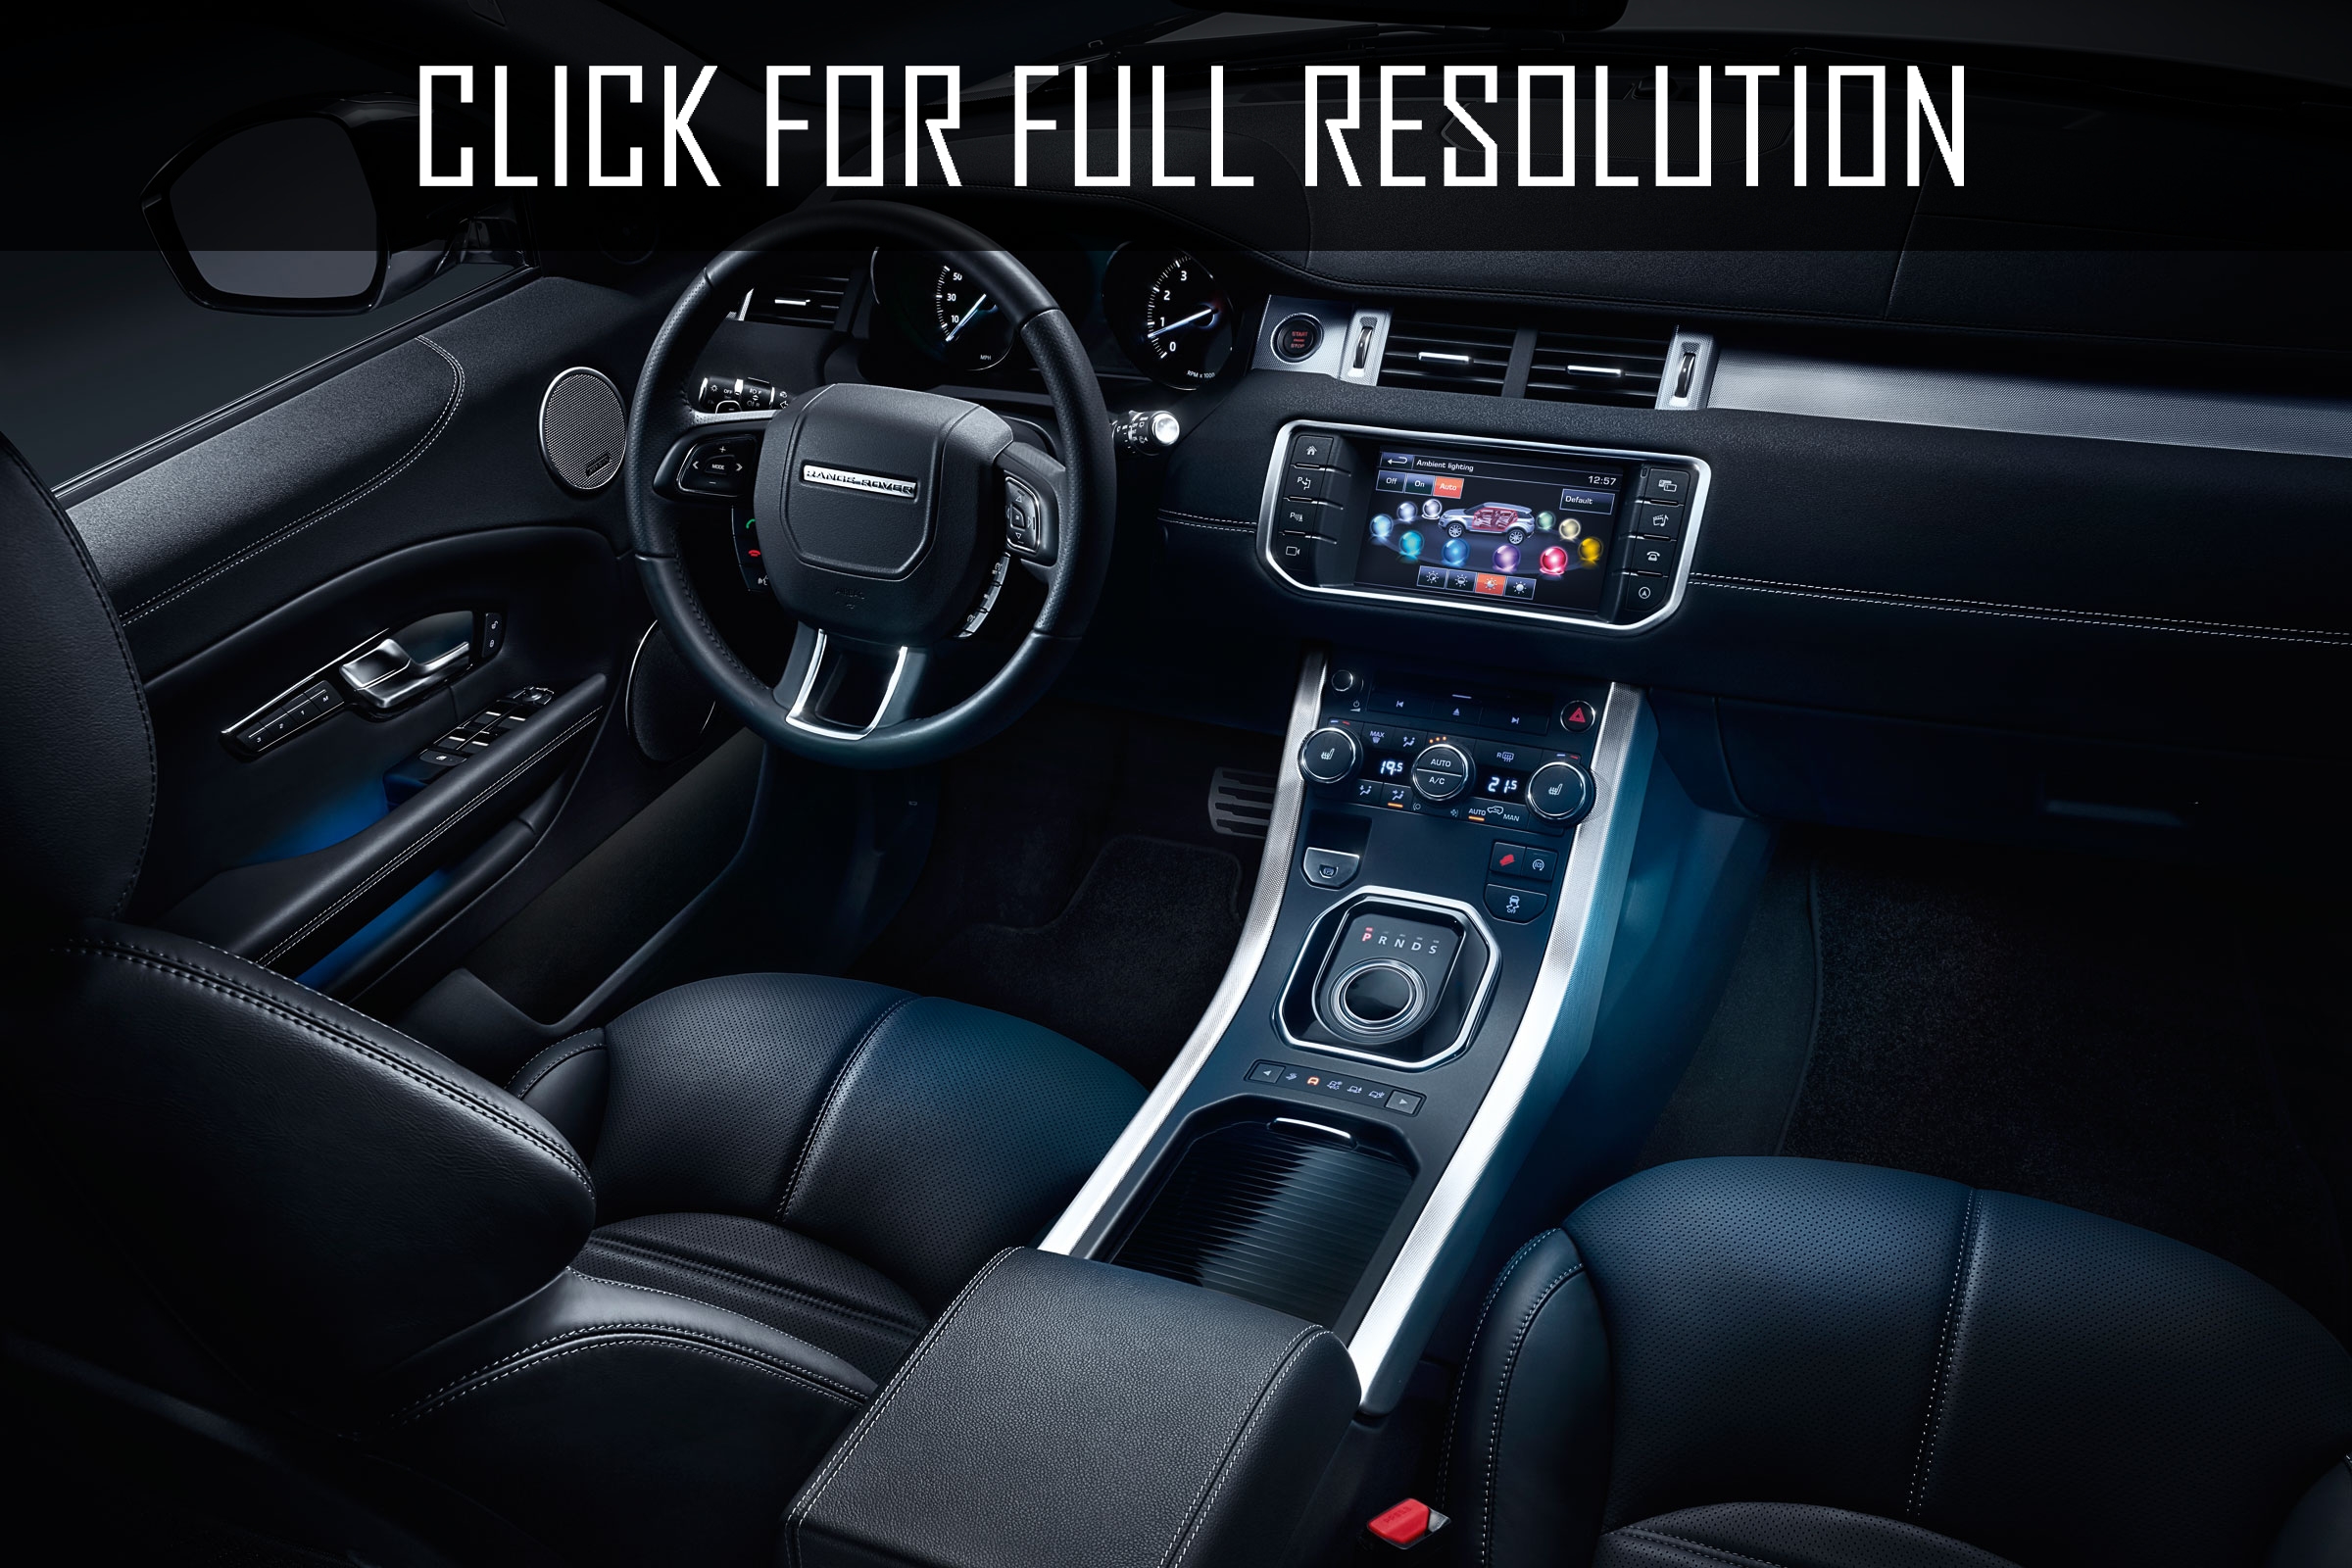 2016 Land Rover Range Rover Evoque interior